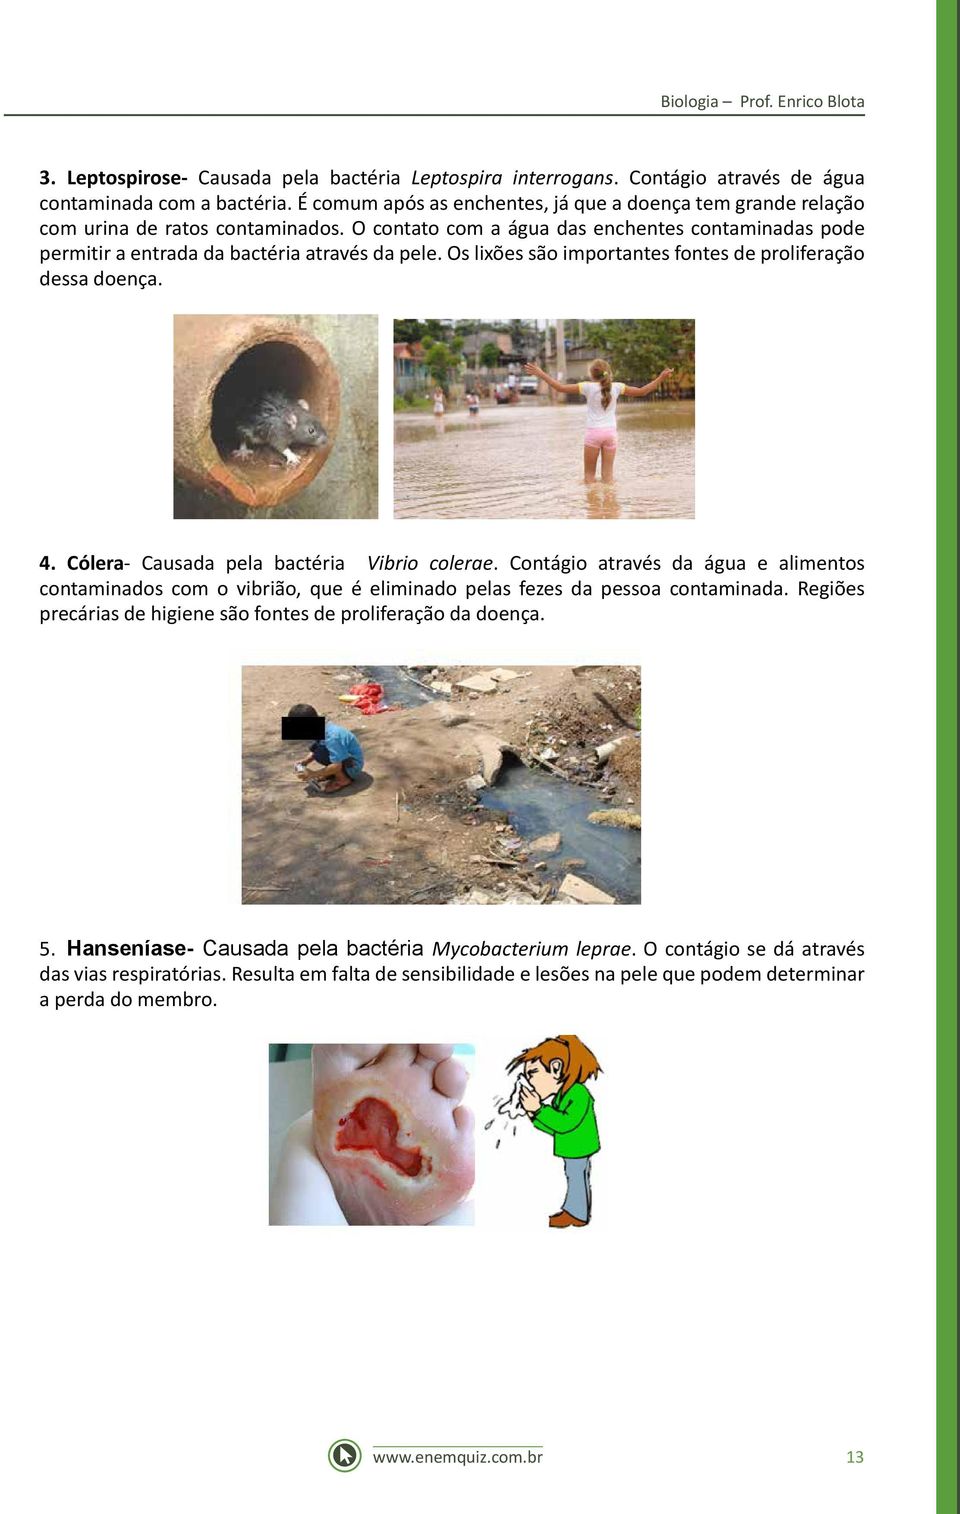 Os lixões são importantes fontes de proliferação dessa doença. 4. Cólera- Causada pela bactéria Vibrio colerae.